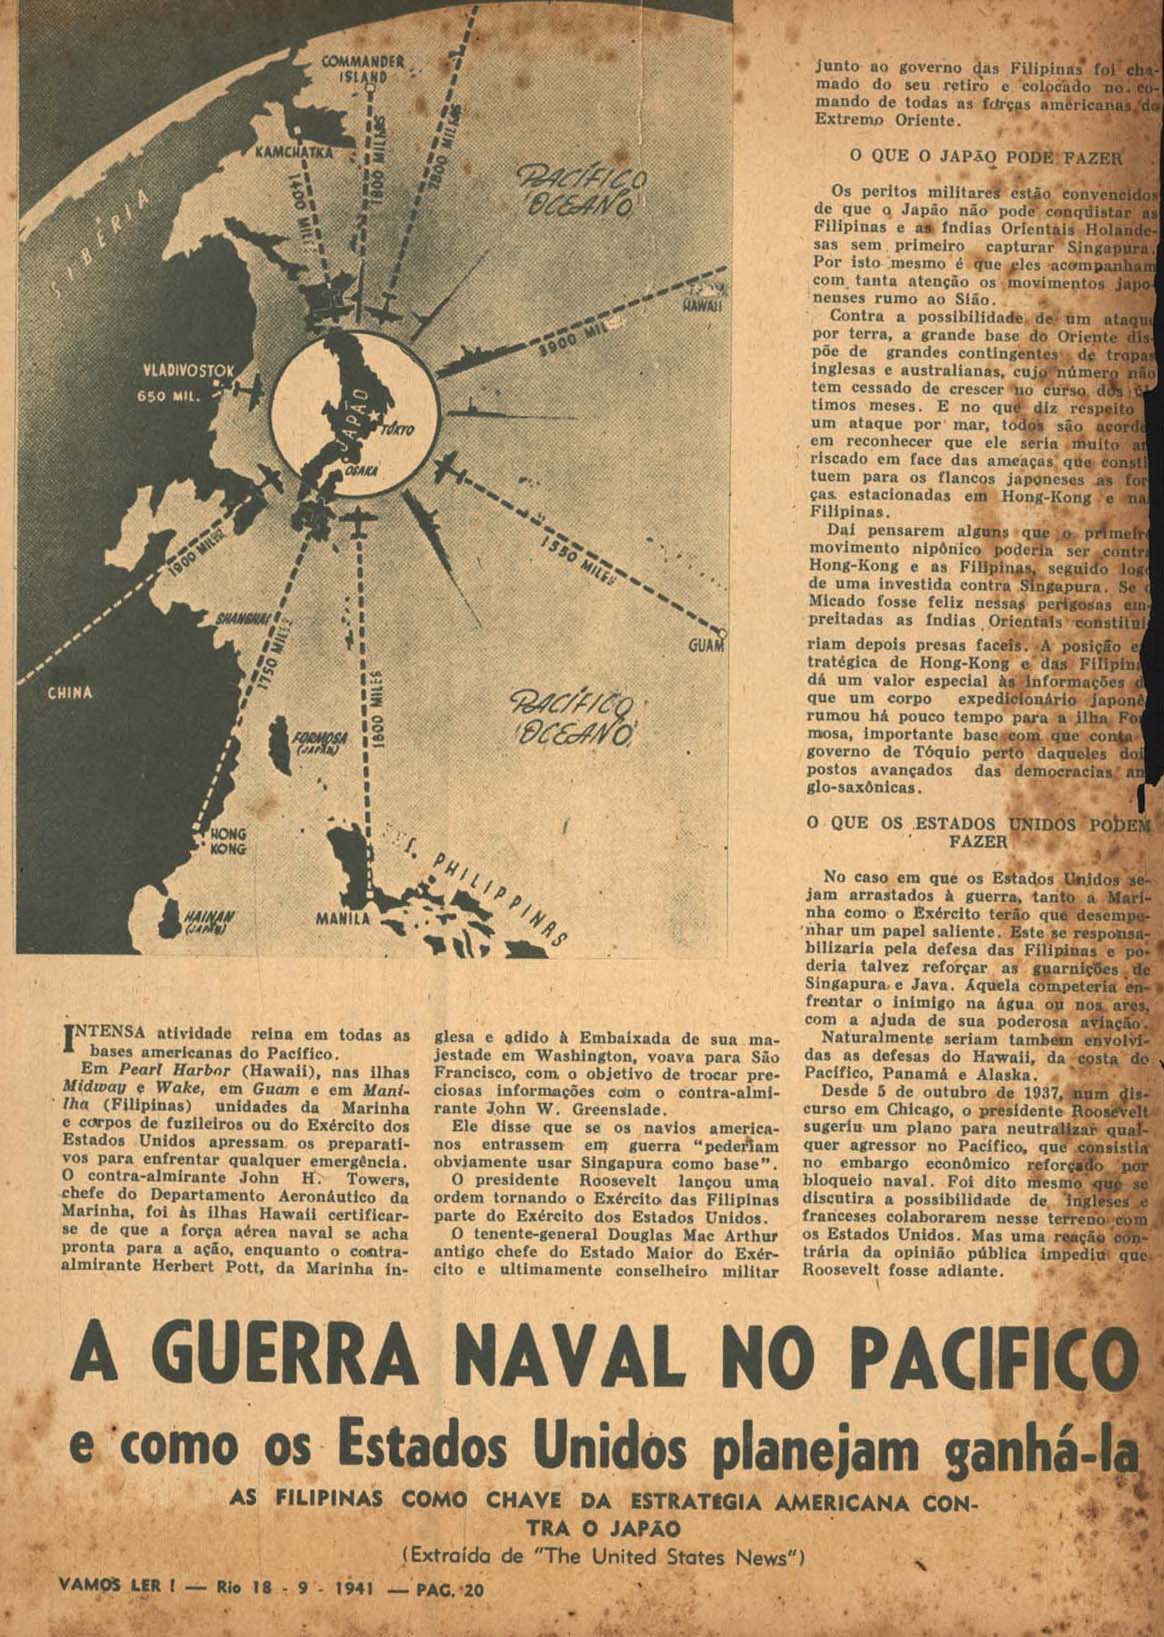 LOUREIRO, Pizarro. A guerra naval no Pacífico: sobre a presença dos EUA no Pacífico. Vamos Ler, Rio de Janeiro, n. 268, p. 20-21, 29, set. 1941.